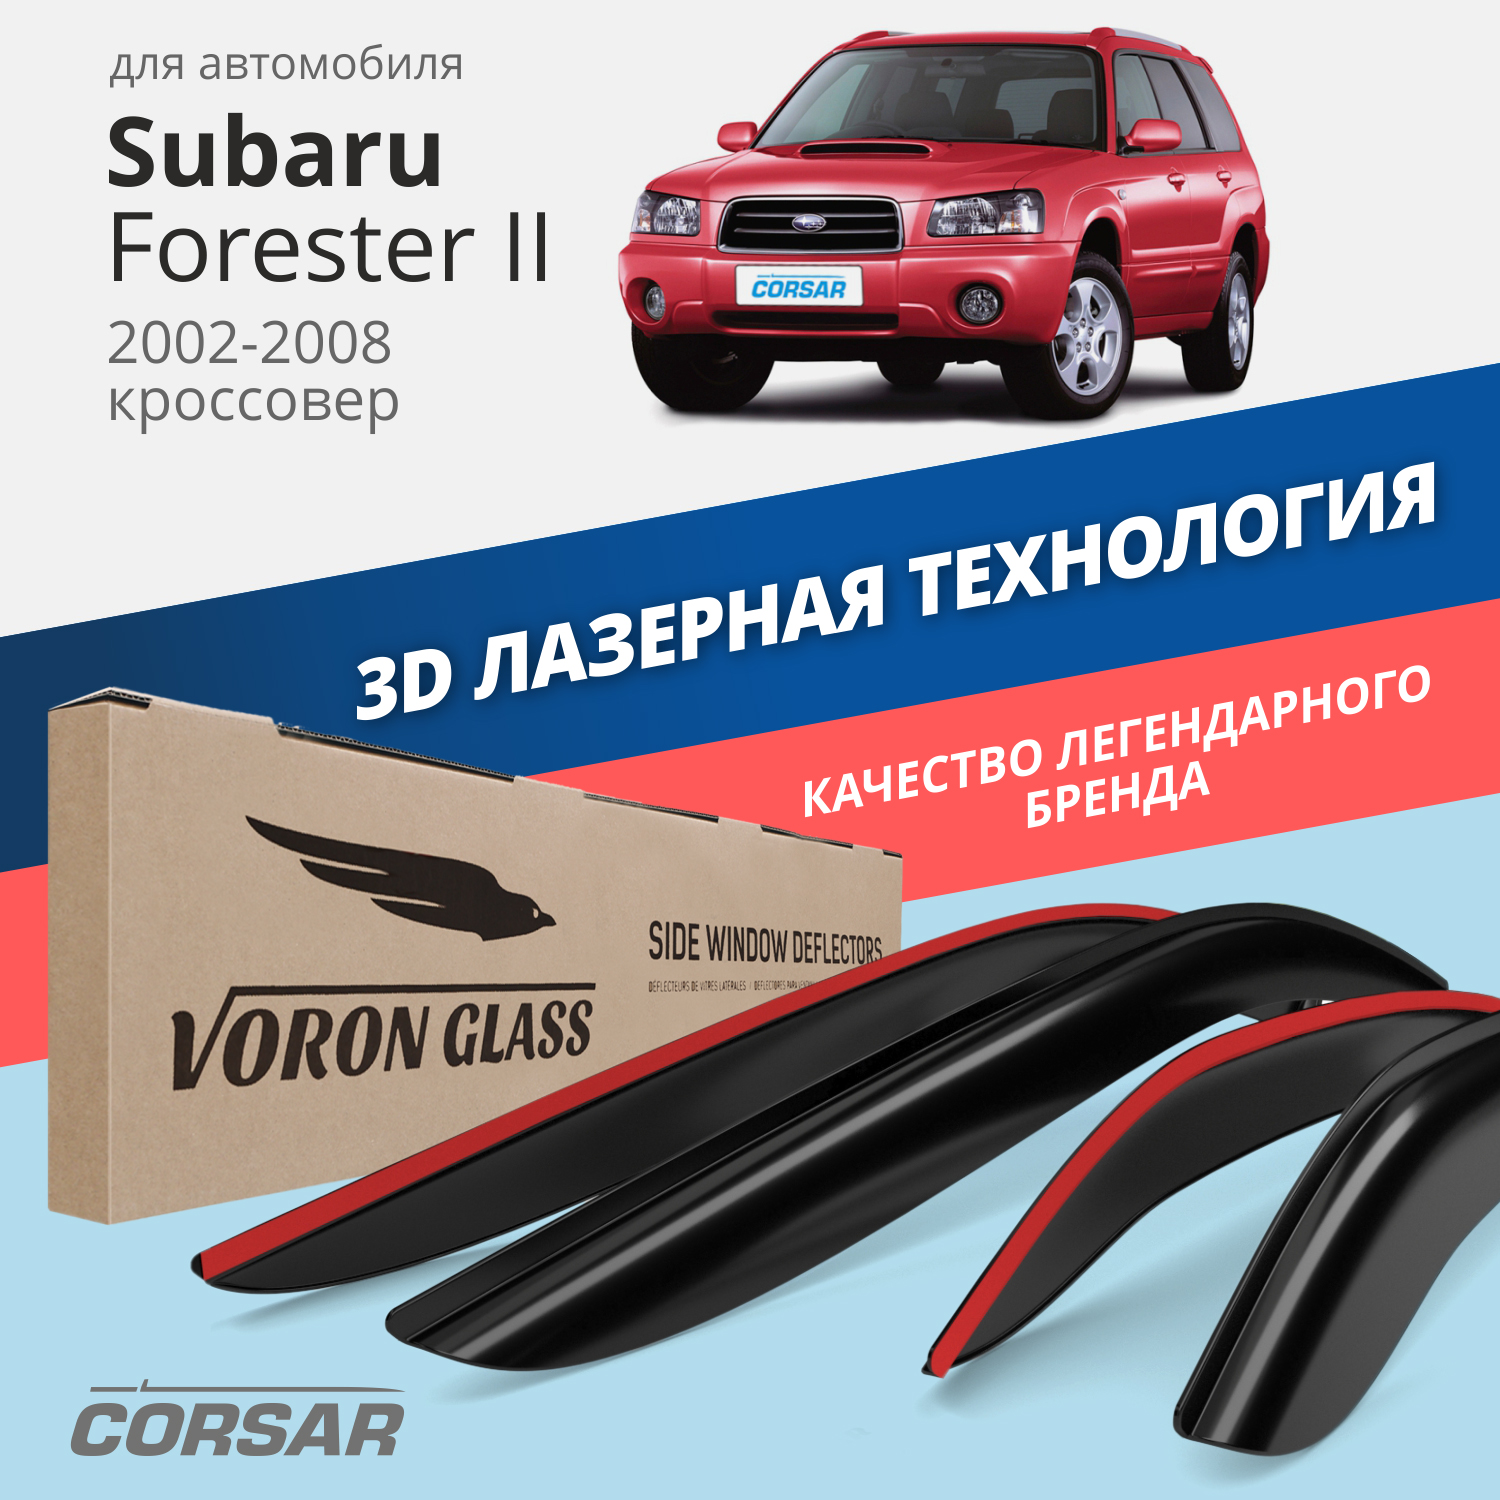 Дефлекторы окон Voron Glass серия Corsar Subaru Forester II 2002-2008/кроссовер/к-т 4 шт/